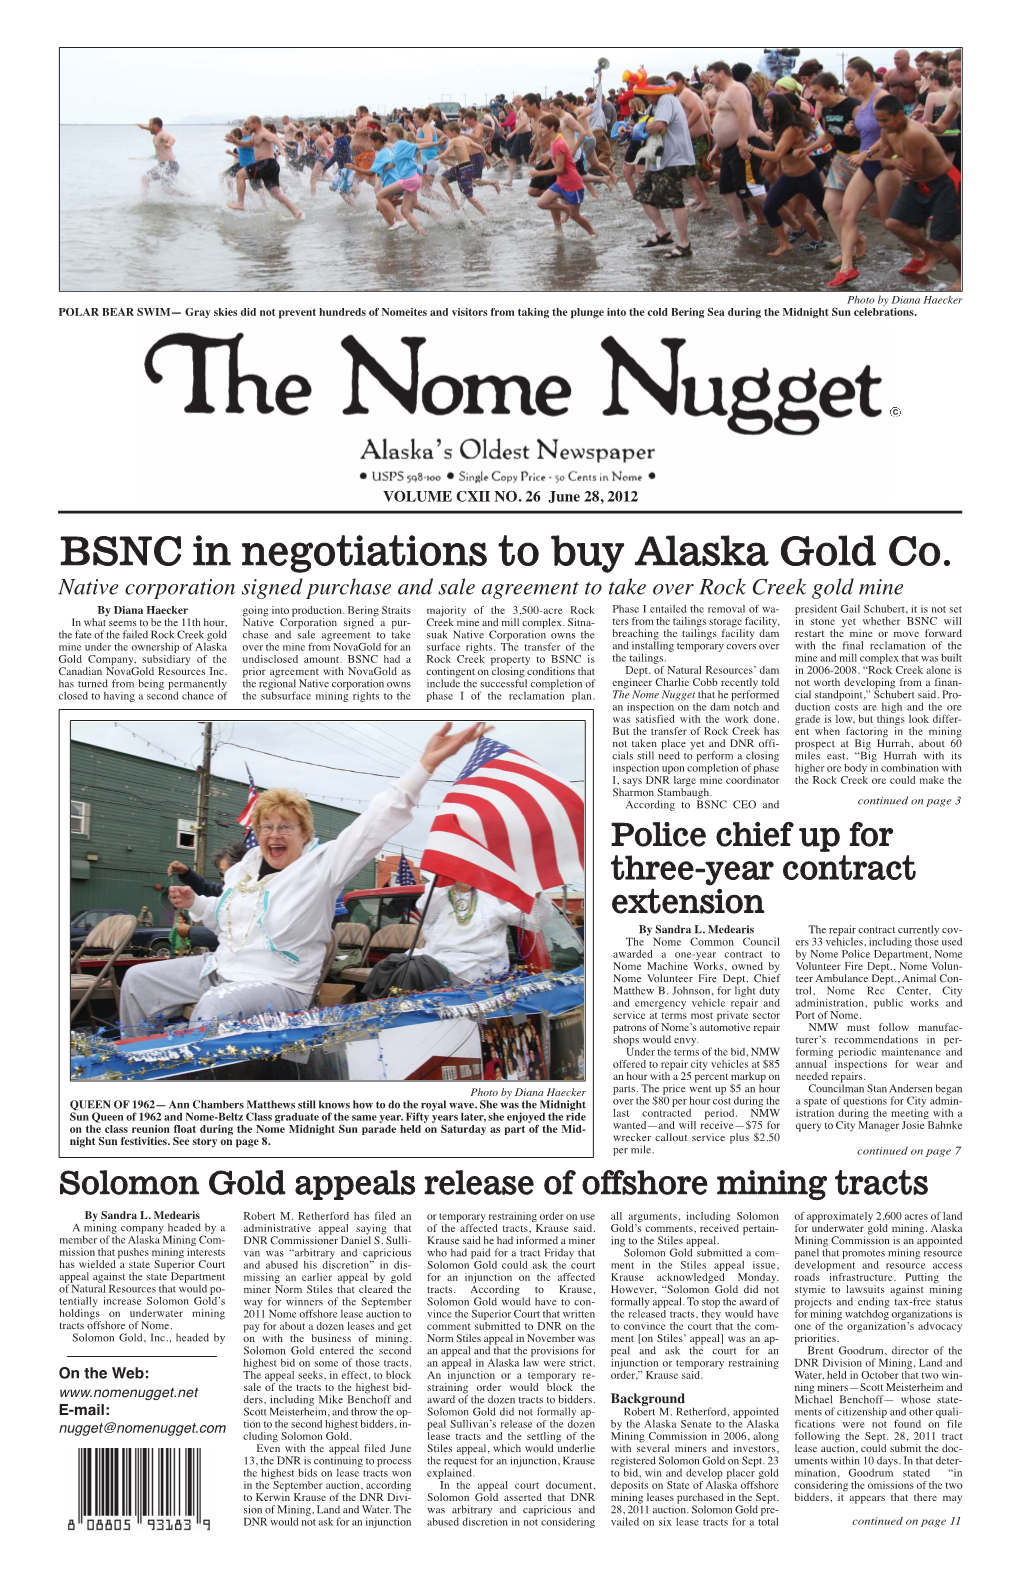 June 28, 2012 BSNC in Negotiations to Buy Alaska Gold Co